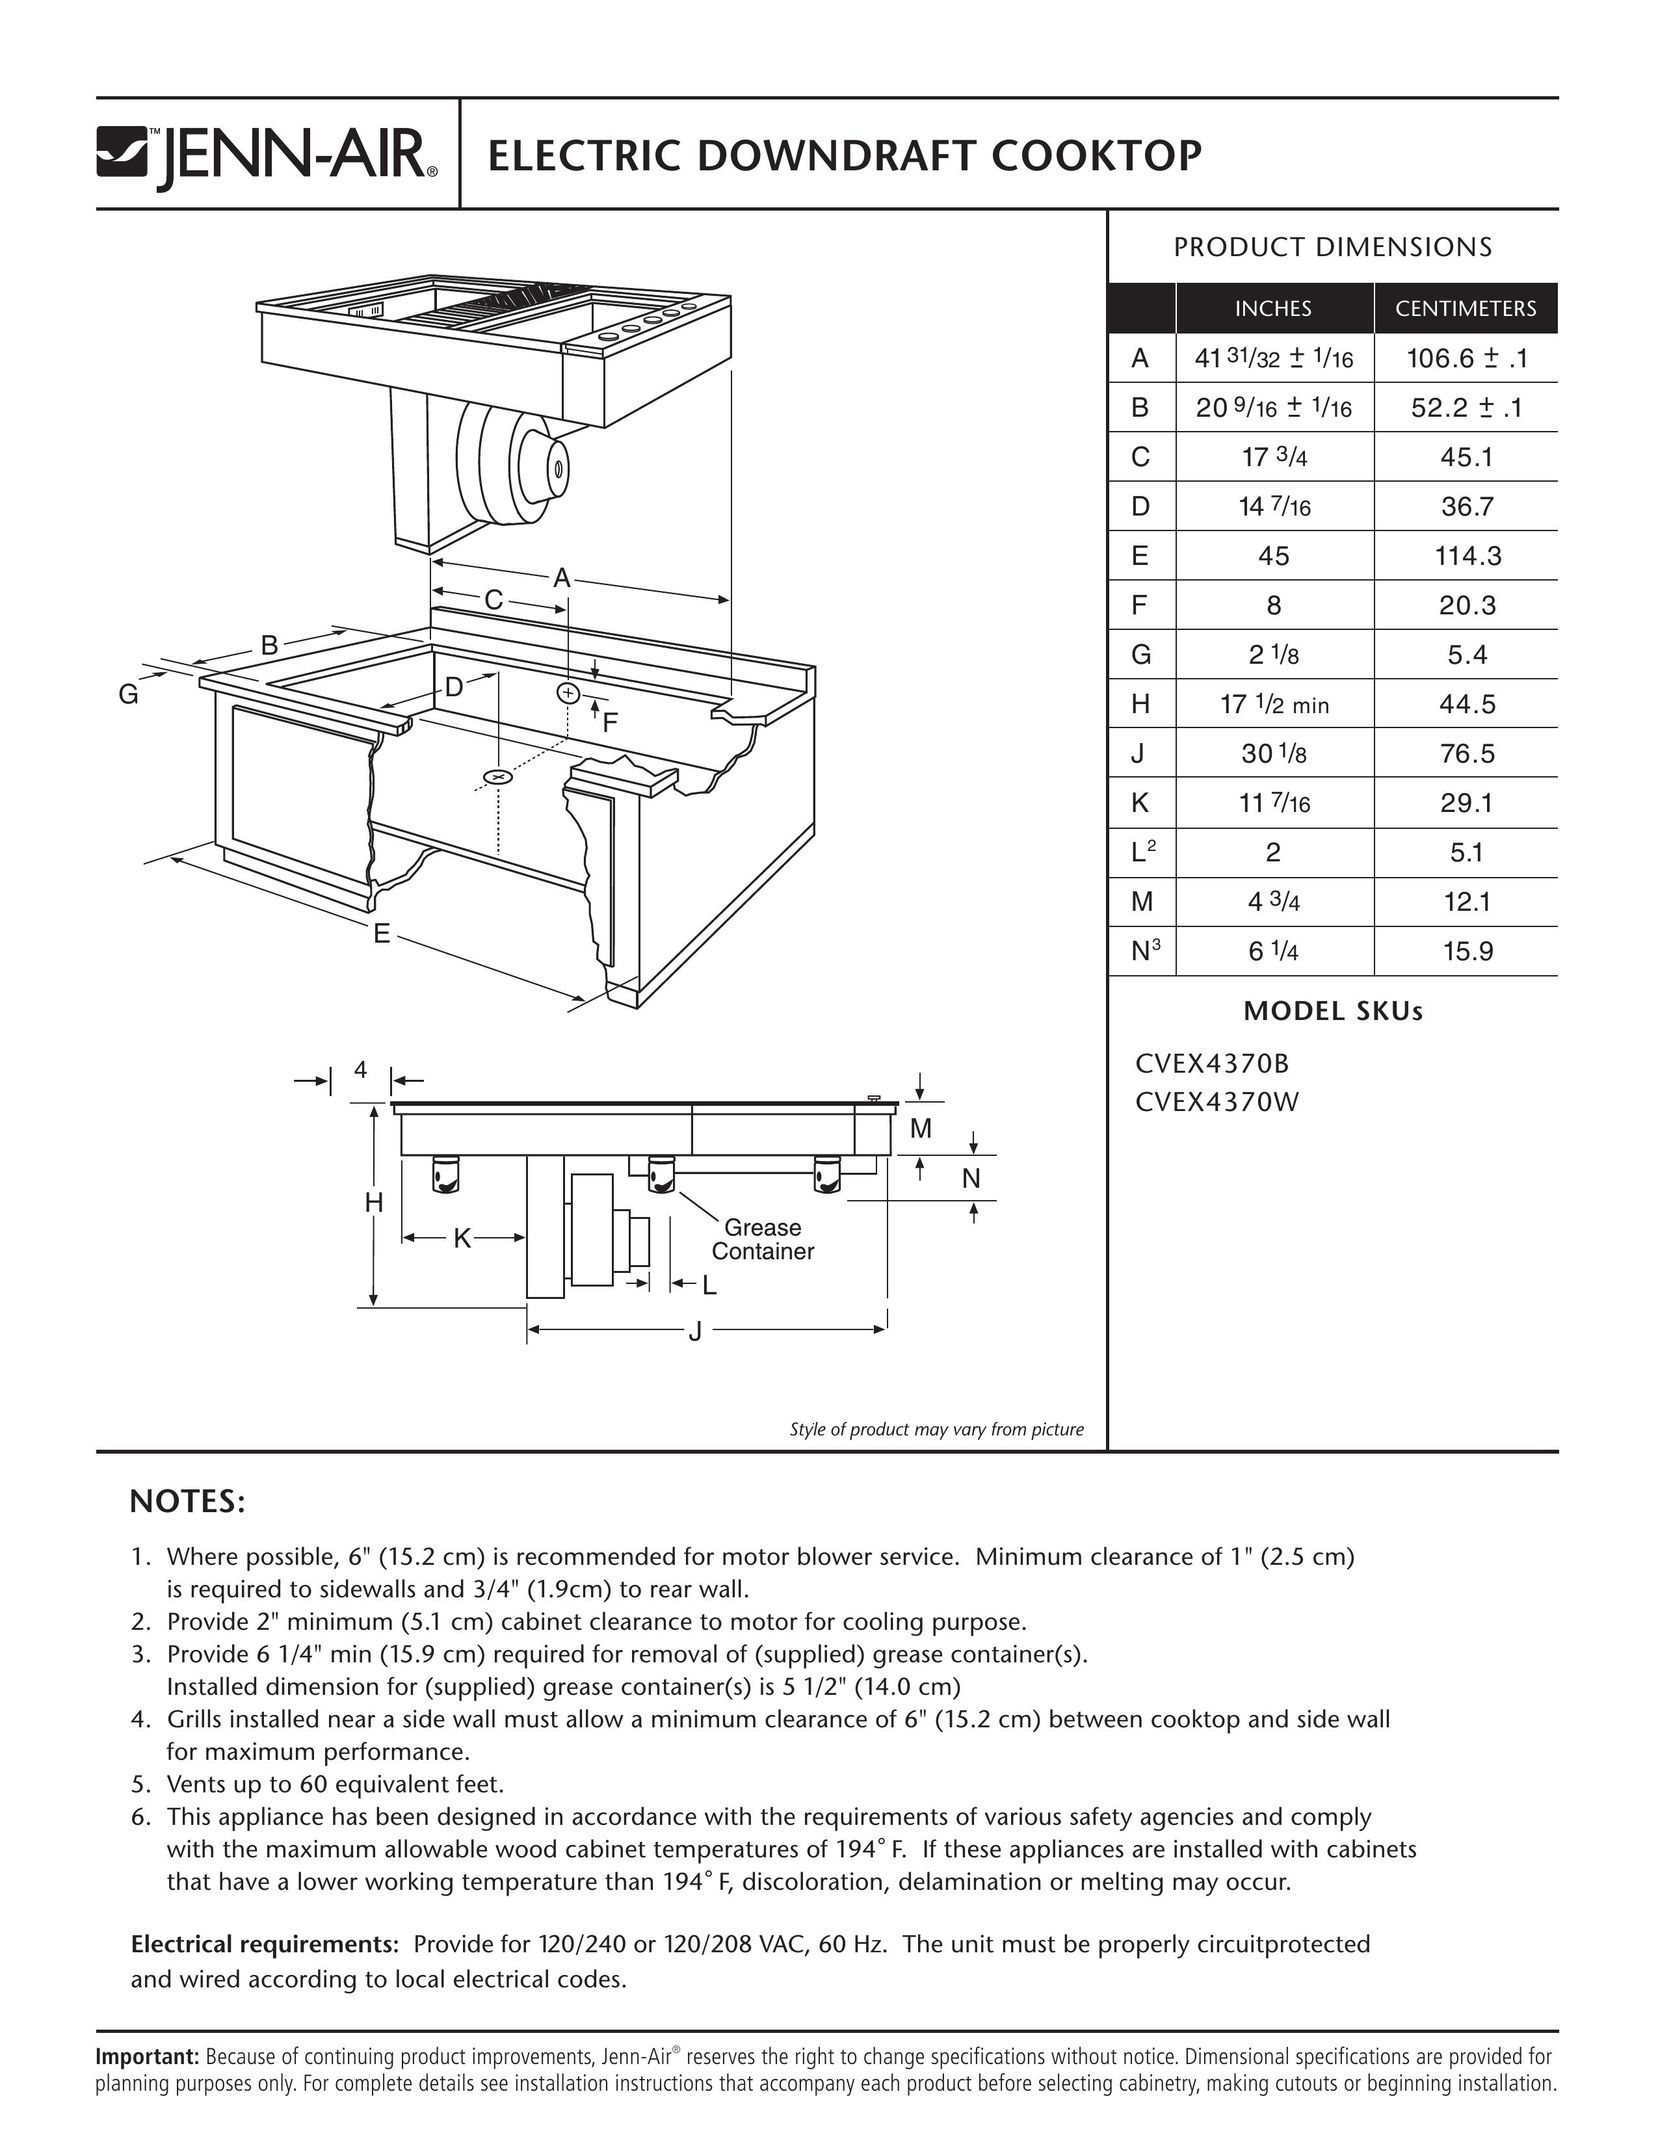 Jenn-Air CVEX4370B Cooktop User Manual